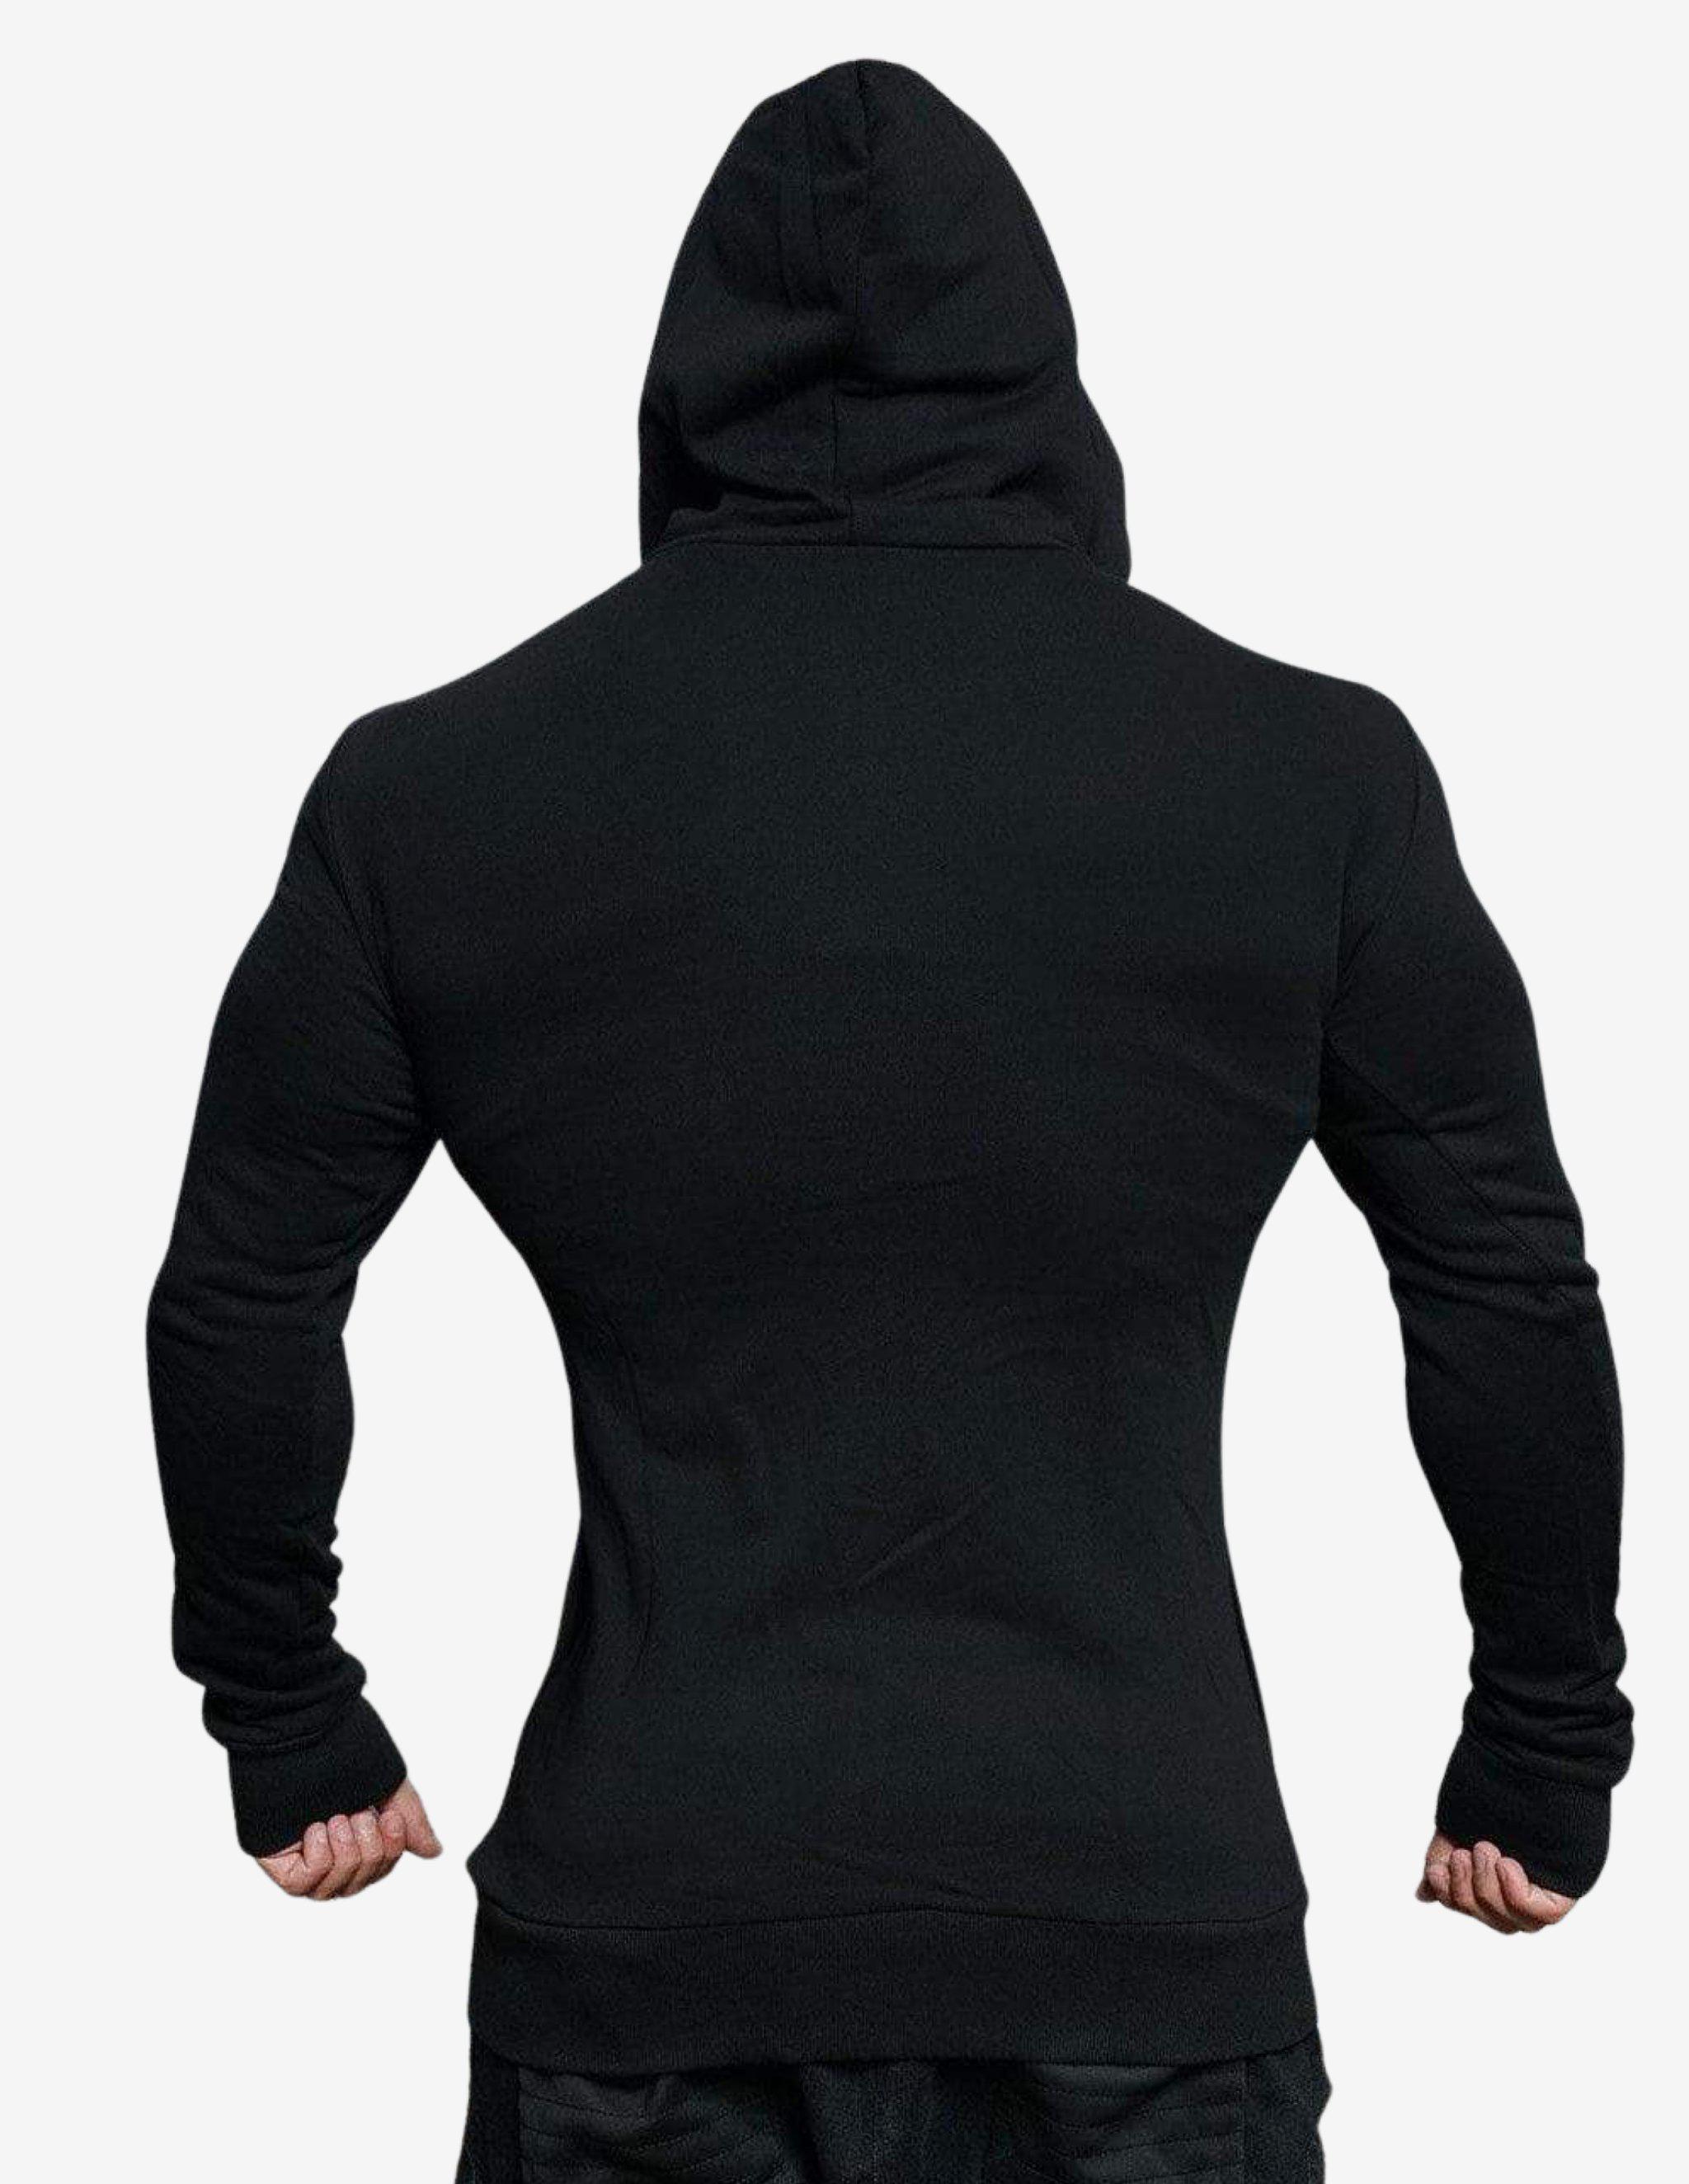 XA1 vest – BLACK OUT-Hoodie Man-Body Engineers-Guru Muscle